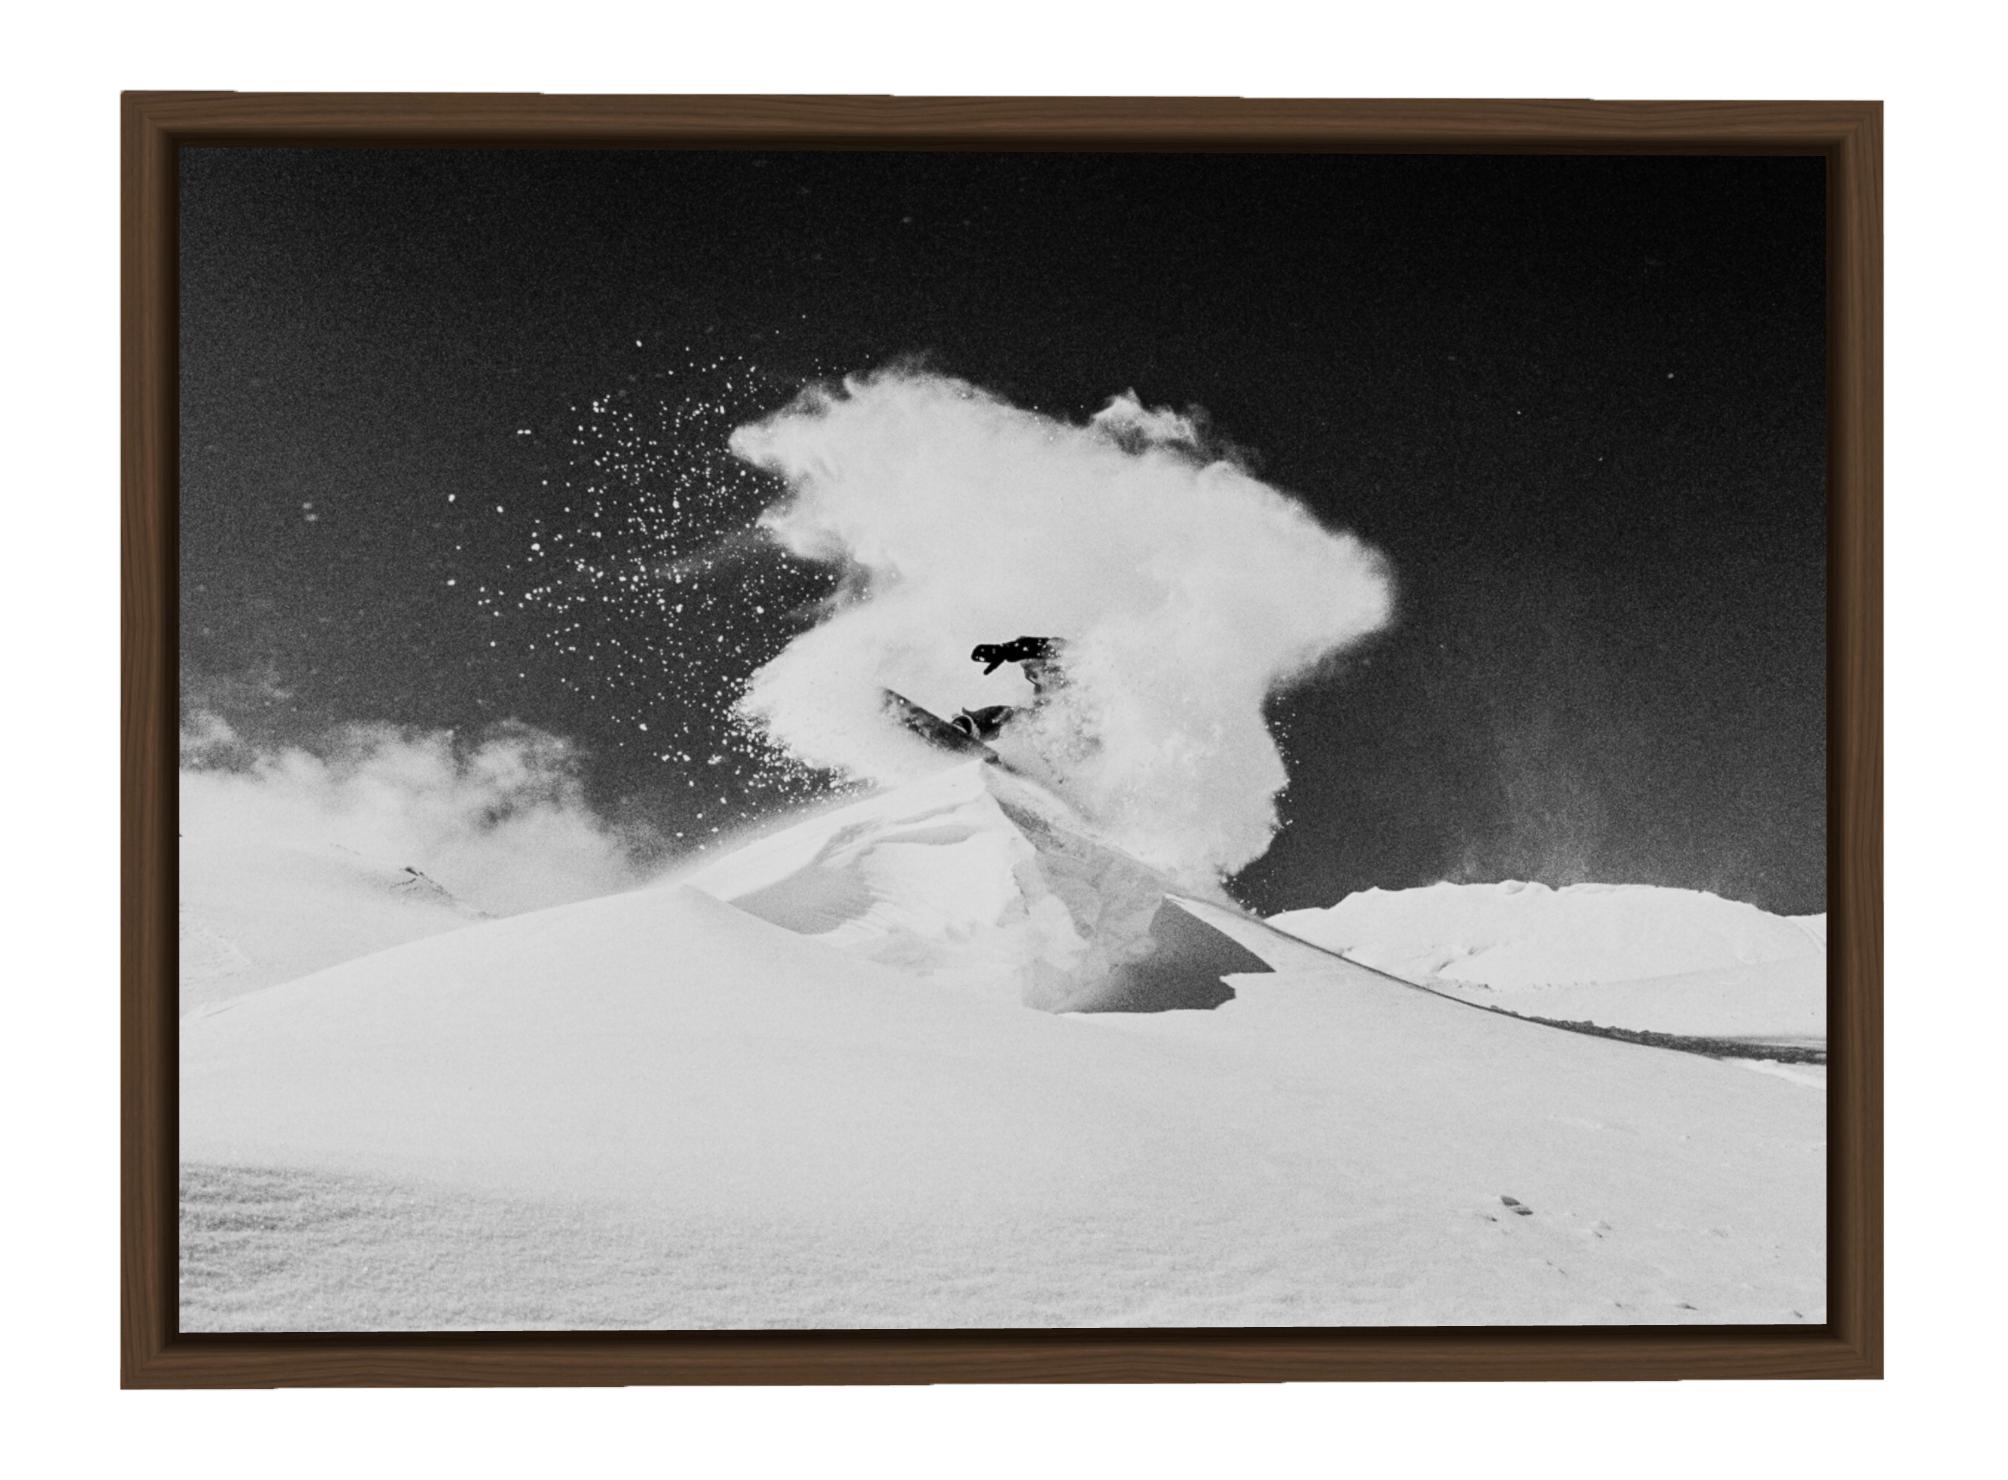 Snowdance - Mountain Snowboarding Schwarz-Weiß-Kunstfotografie (Abstrakter Expressionismus), Photograph, von Carlos Blanchard